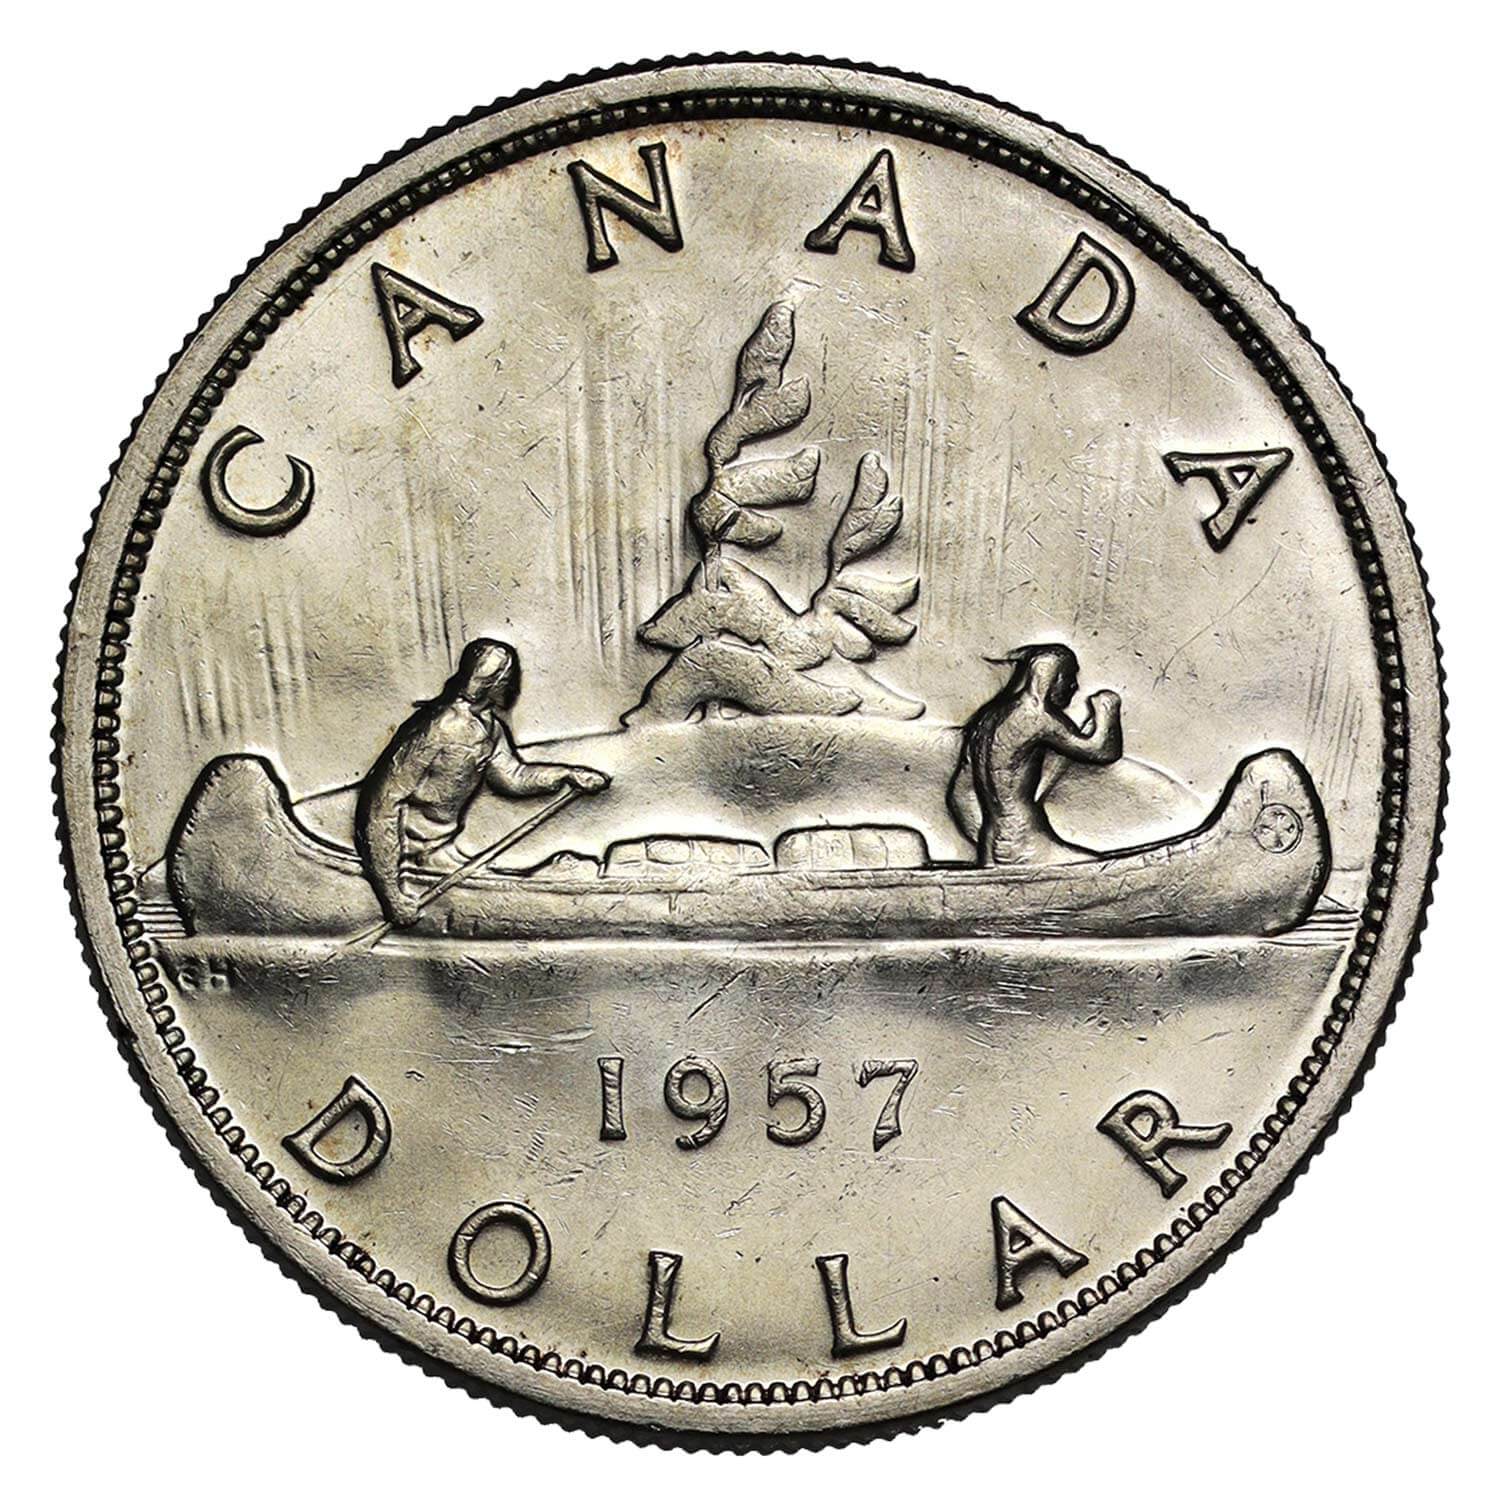 Elizabeth II Silver Dollar reverse side